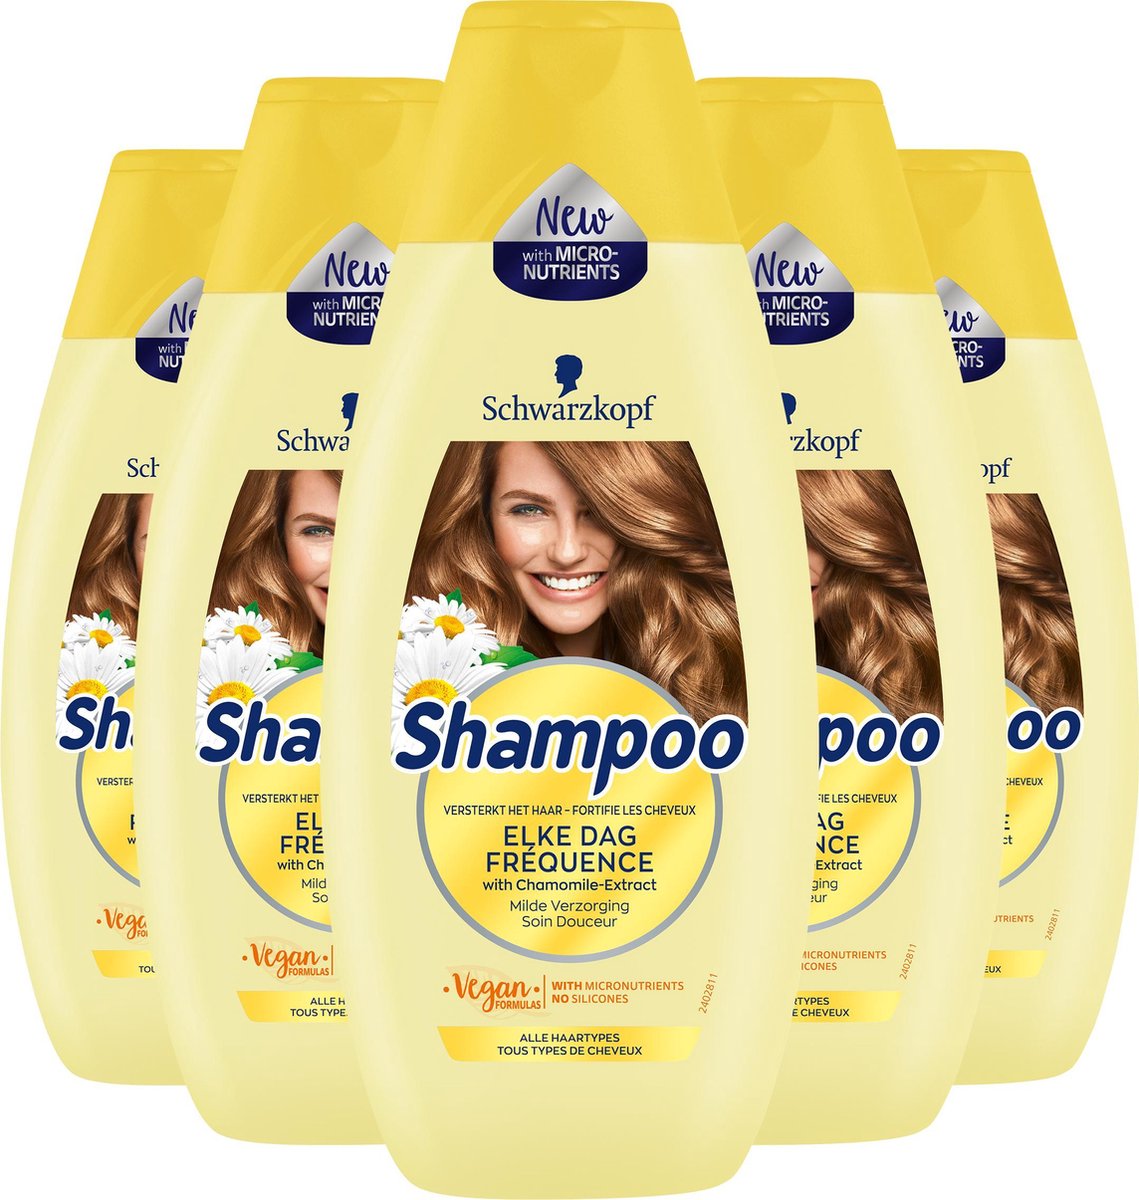 Bol Com Schwarzkopf Elke Dag Shampoo 5x 400ml Voordeelverpakking